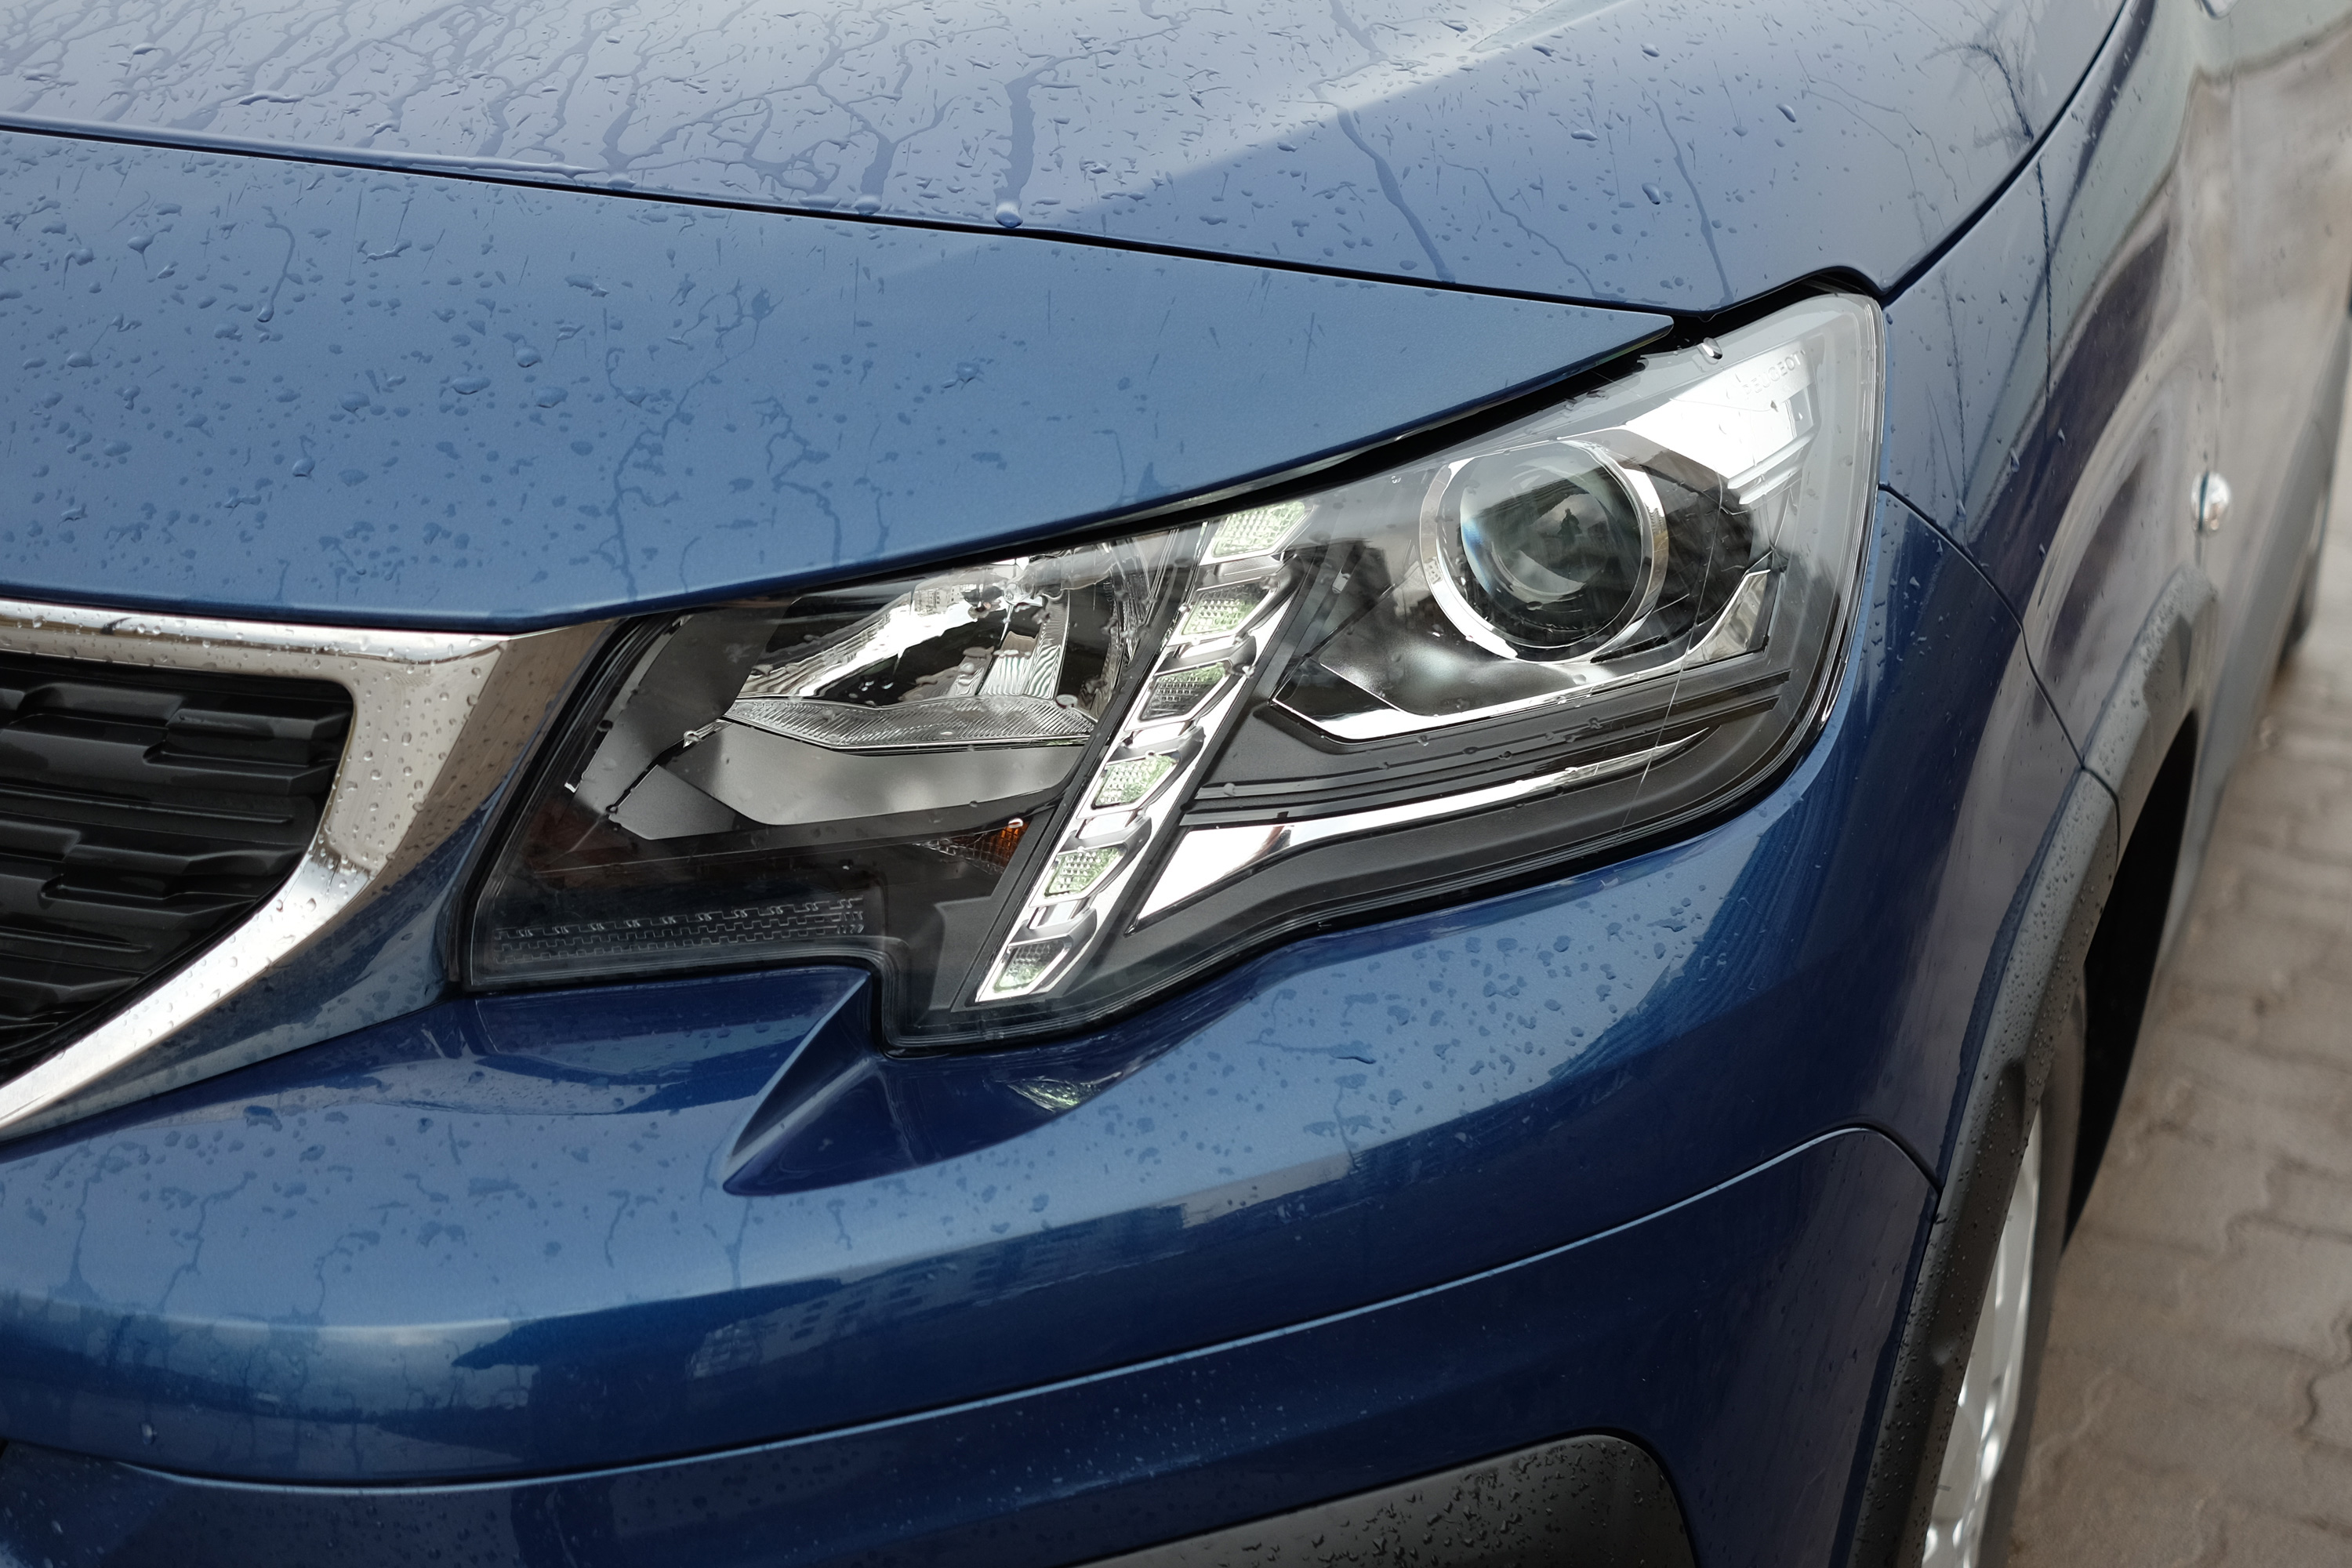 Teleülve is használható egy hétszemélyes autó? – Peugeot Rifter teszt 11